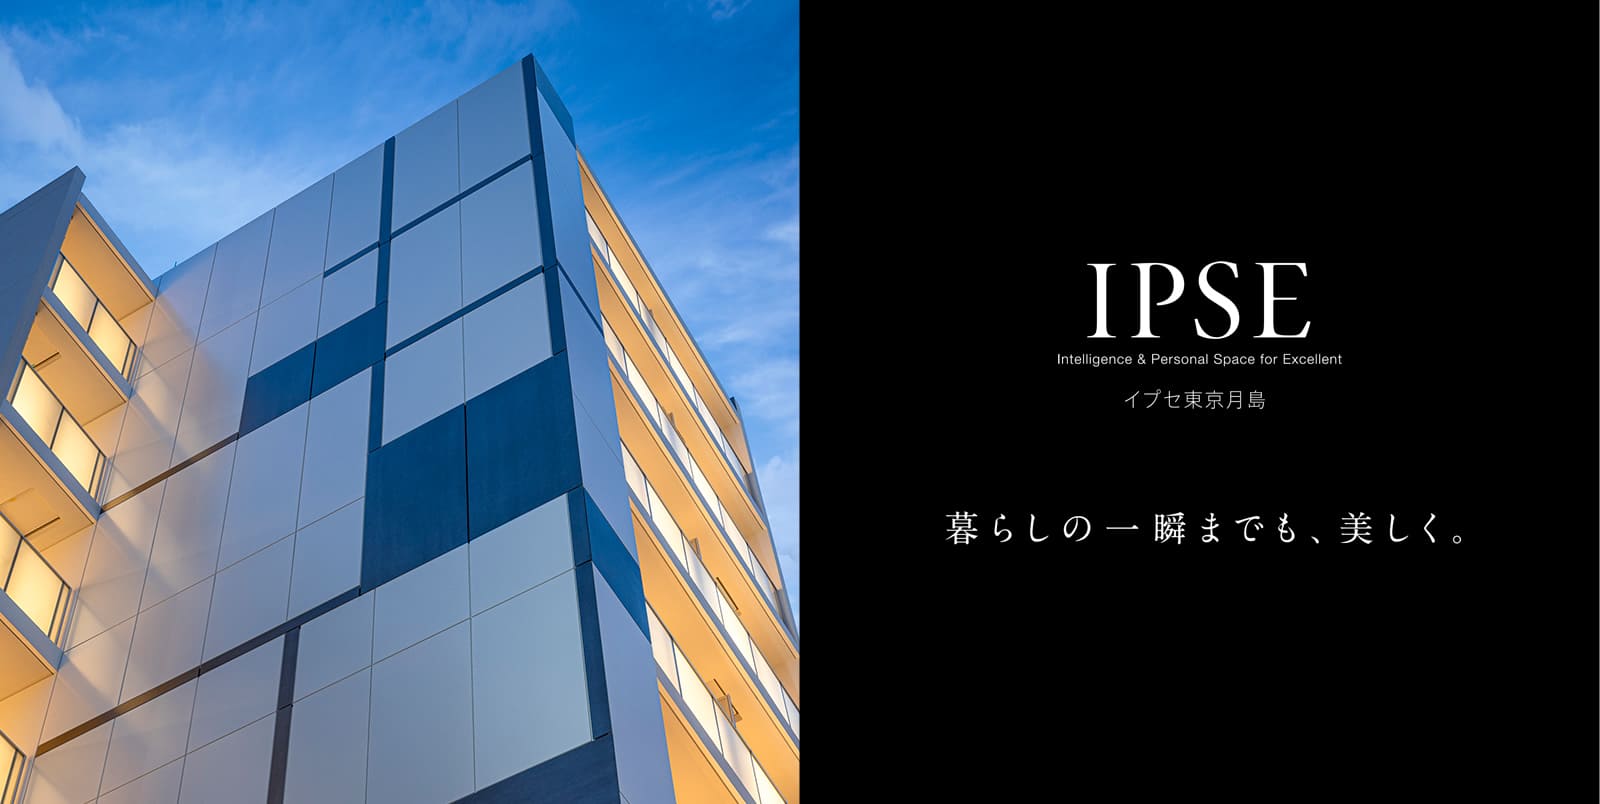 イプセ東京月島 IPSE Intelligence & Personal Space for Excellent 暮らしの一瞬までも、美しく